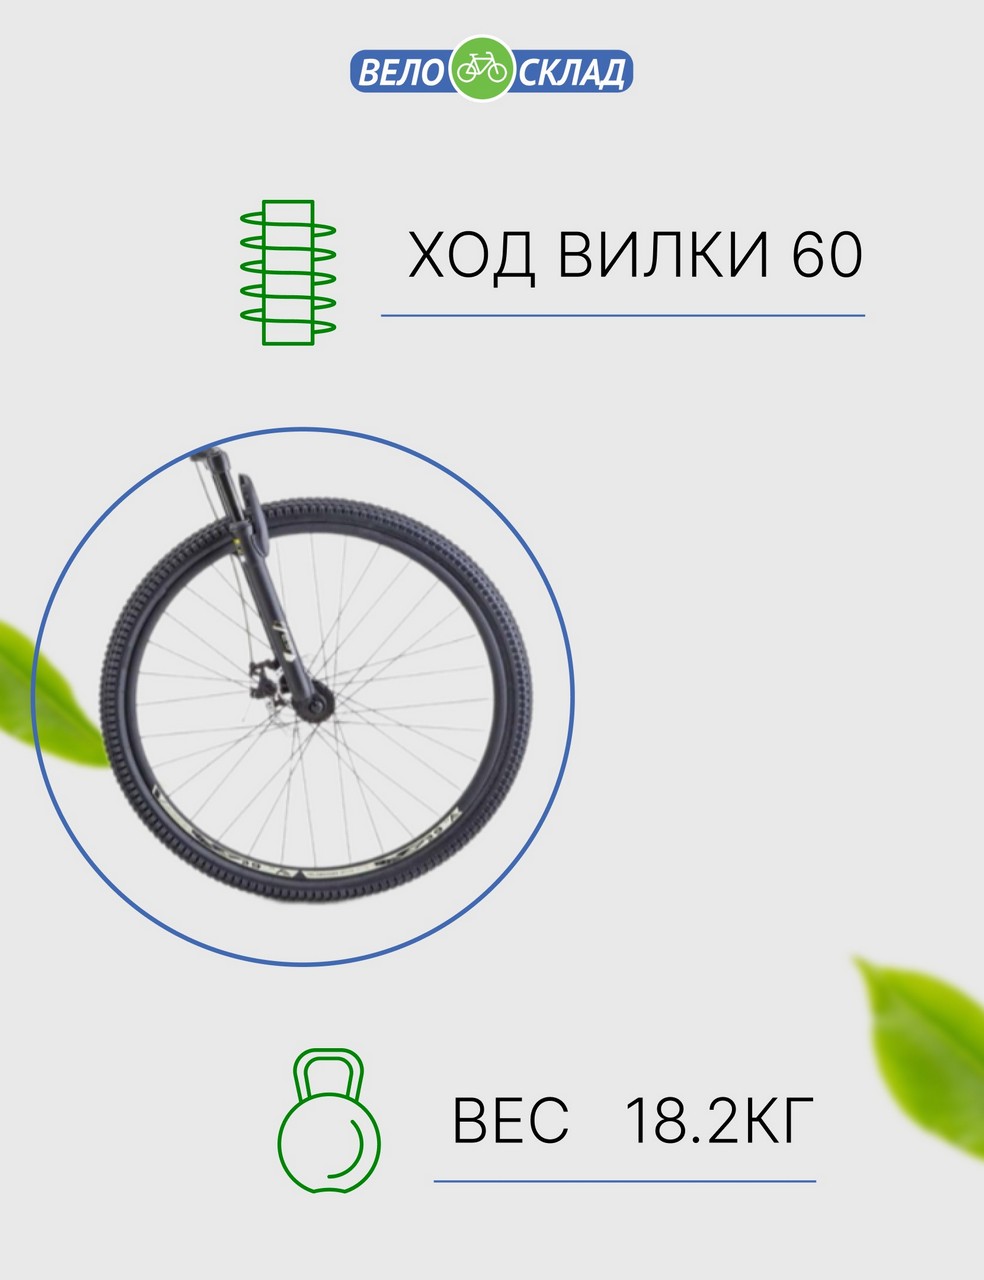 Горный велосипед Stels Navigator 900 MD 29 F020, год 2023, цвет Зеленый, ростовка 17.5